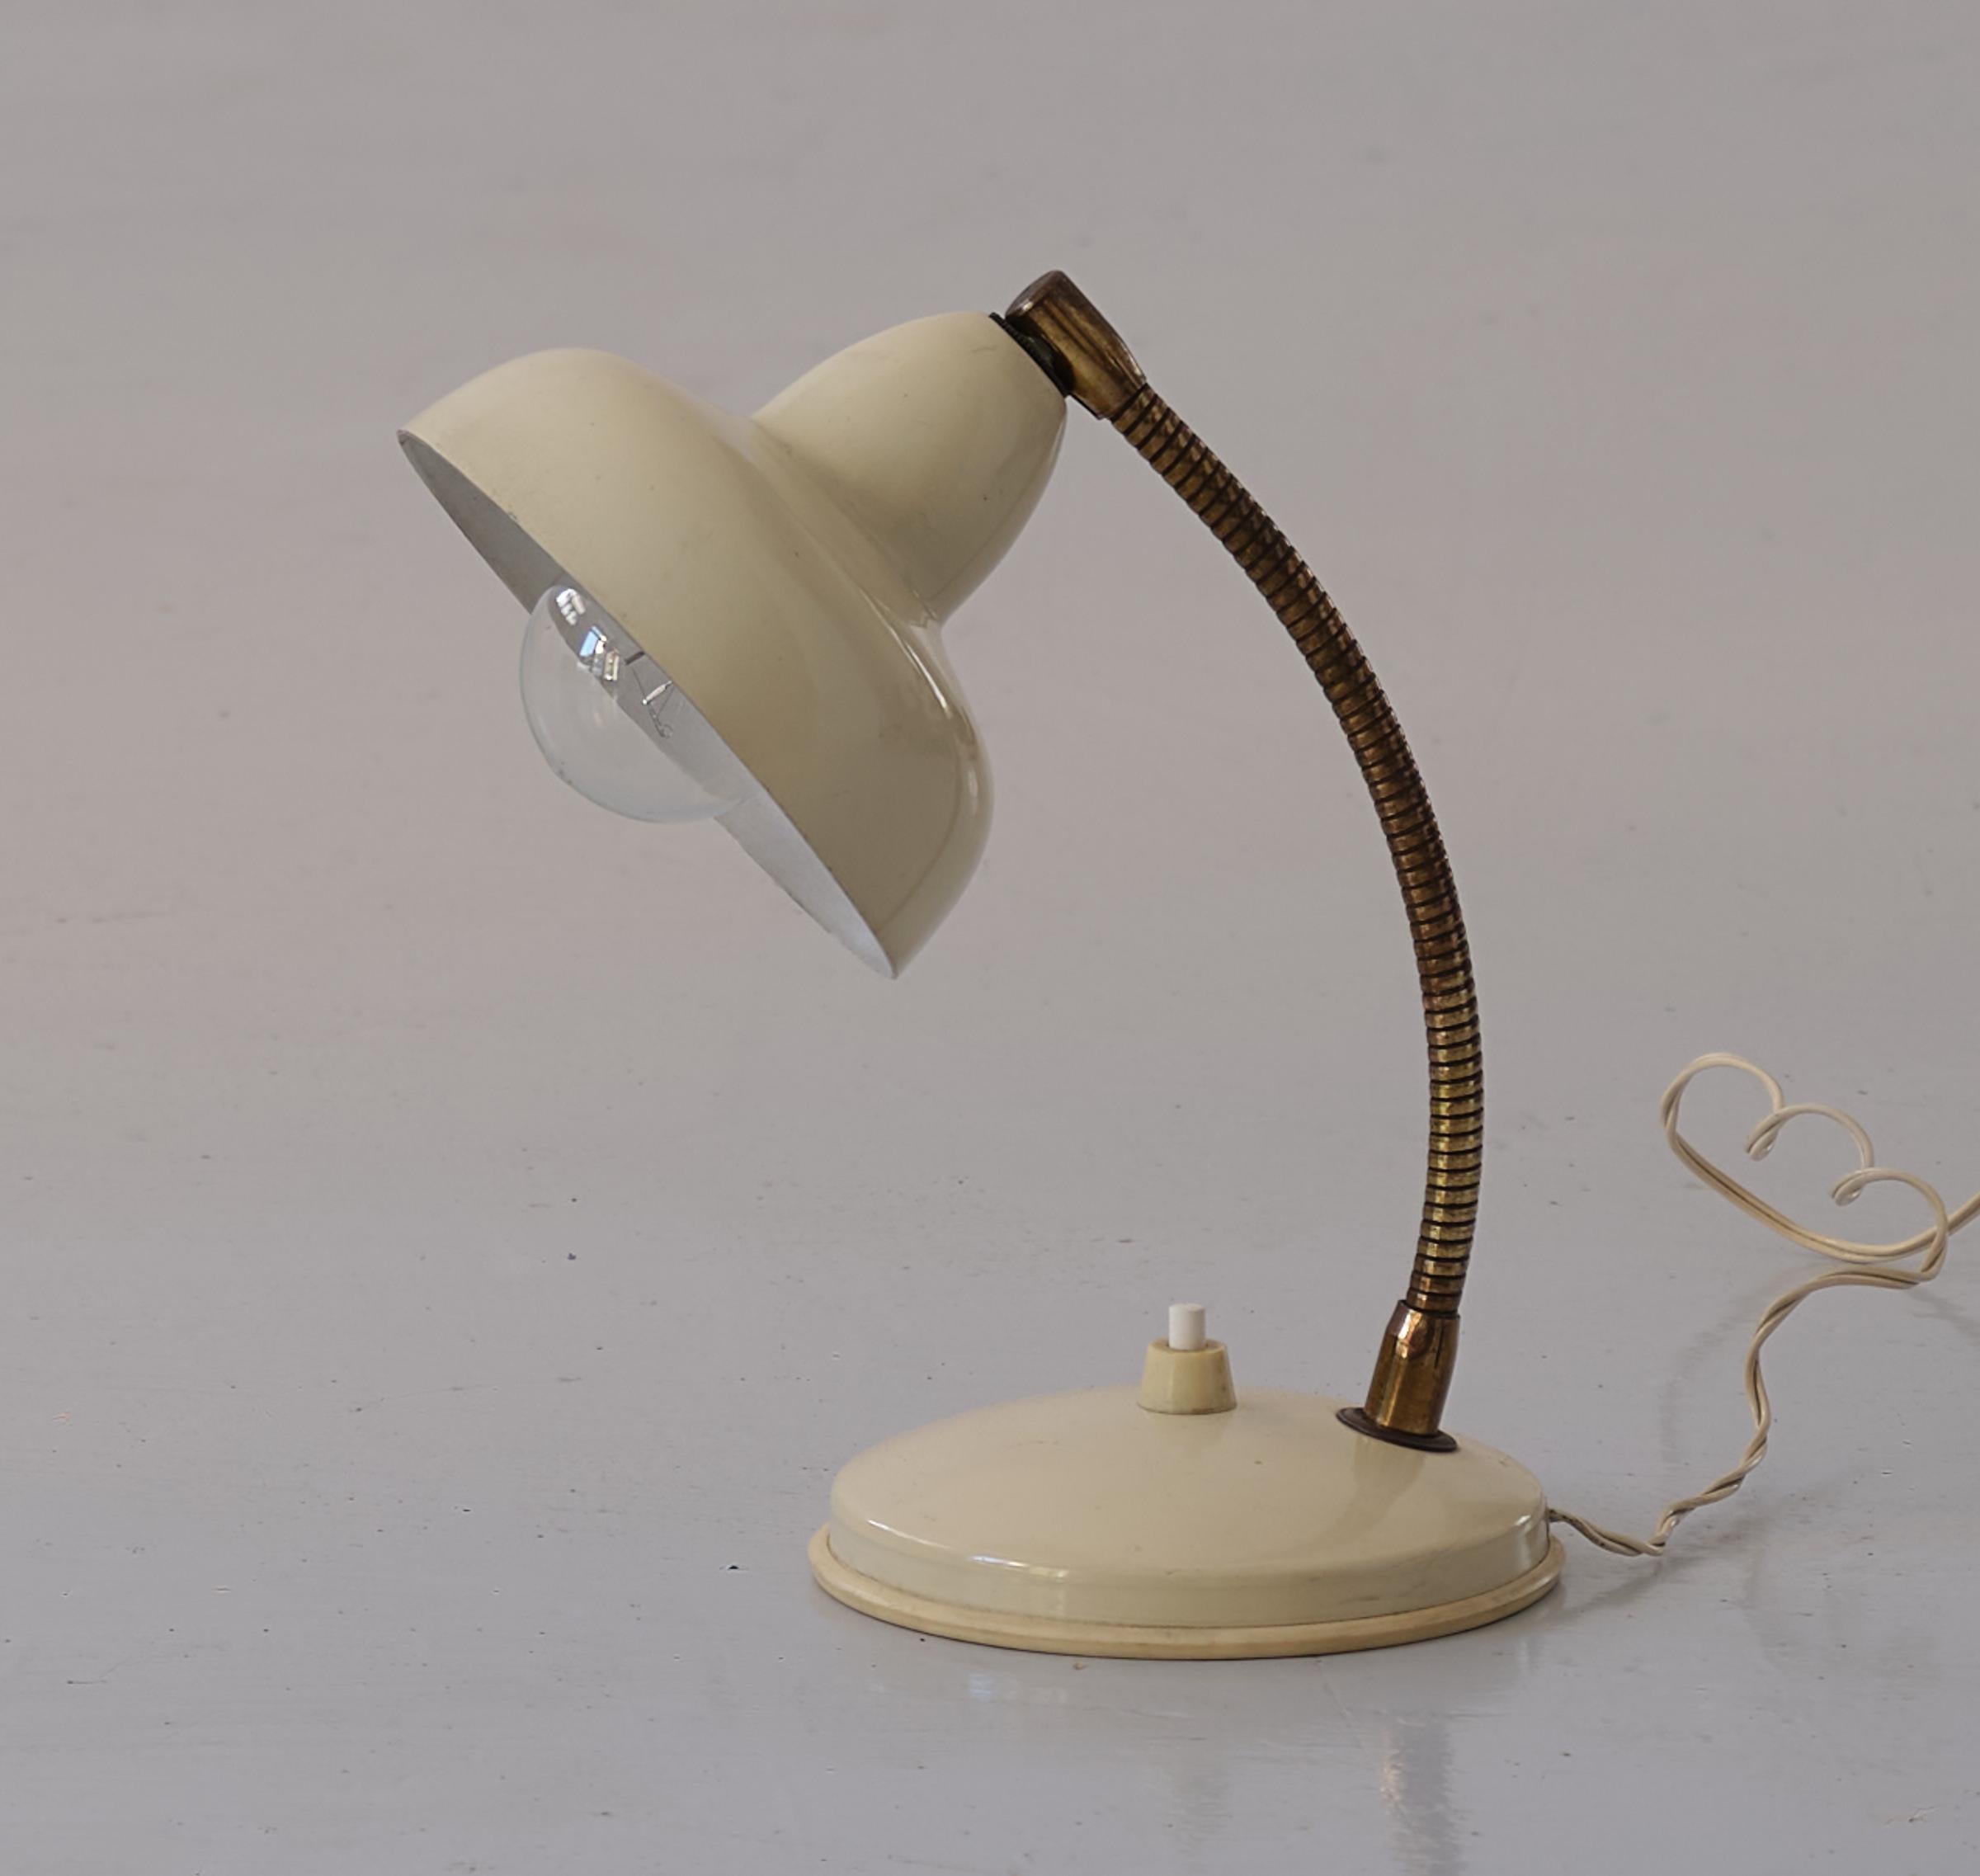 Petite lampe de table ou de chevet vintage, en laiton et métal émaillé couleur crème , Italie , années 1950 .

Cet abat jour est en bon état vintage.
Fil d'origine fonctionnant avec des ampoules E14 standard. Nous pouvons fournir un adaptateur de